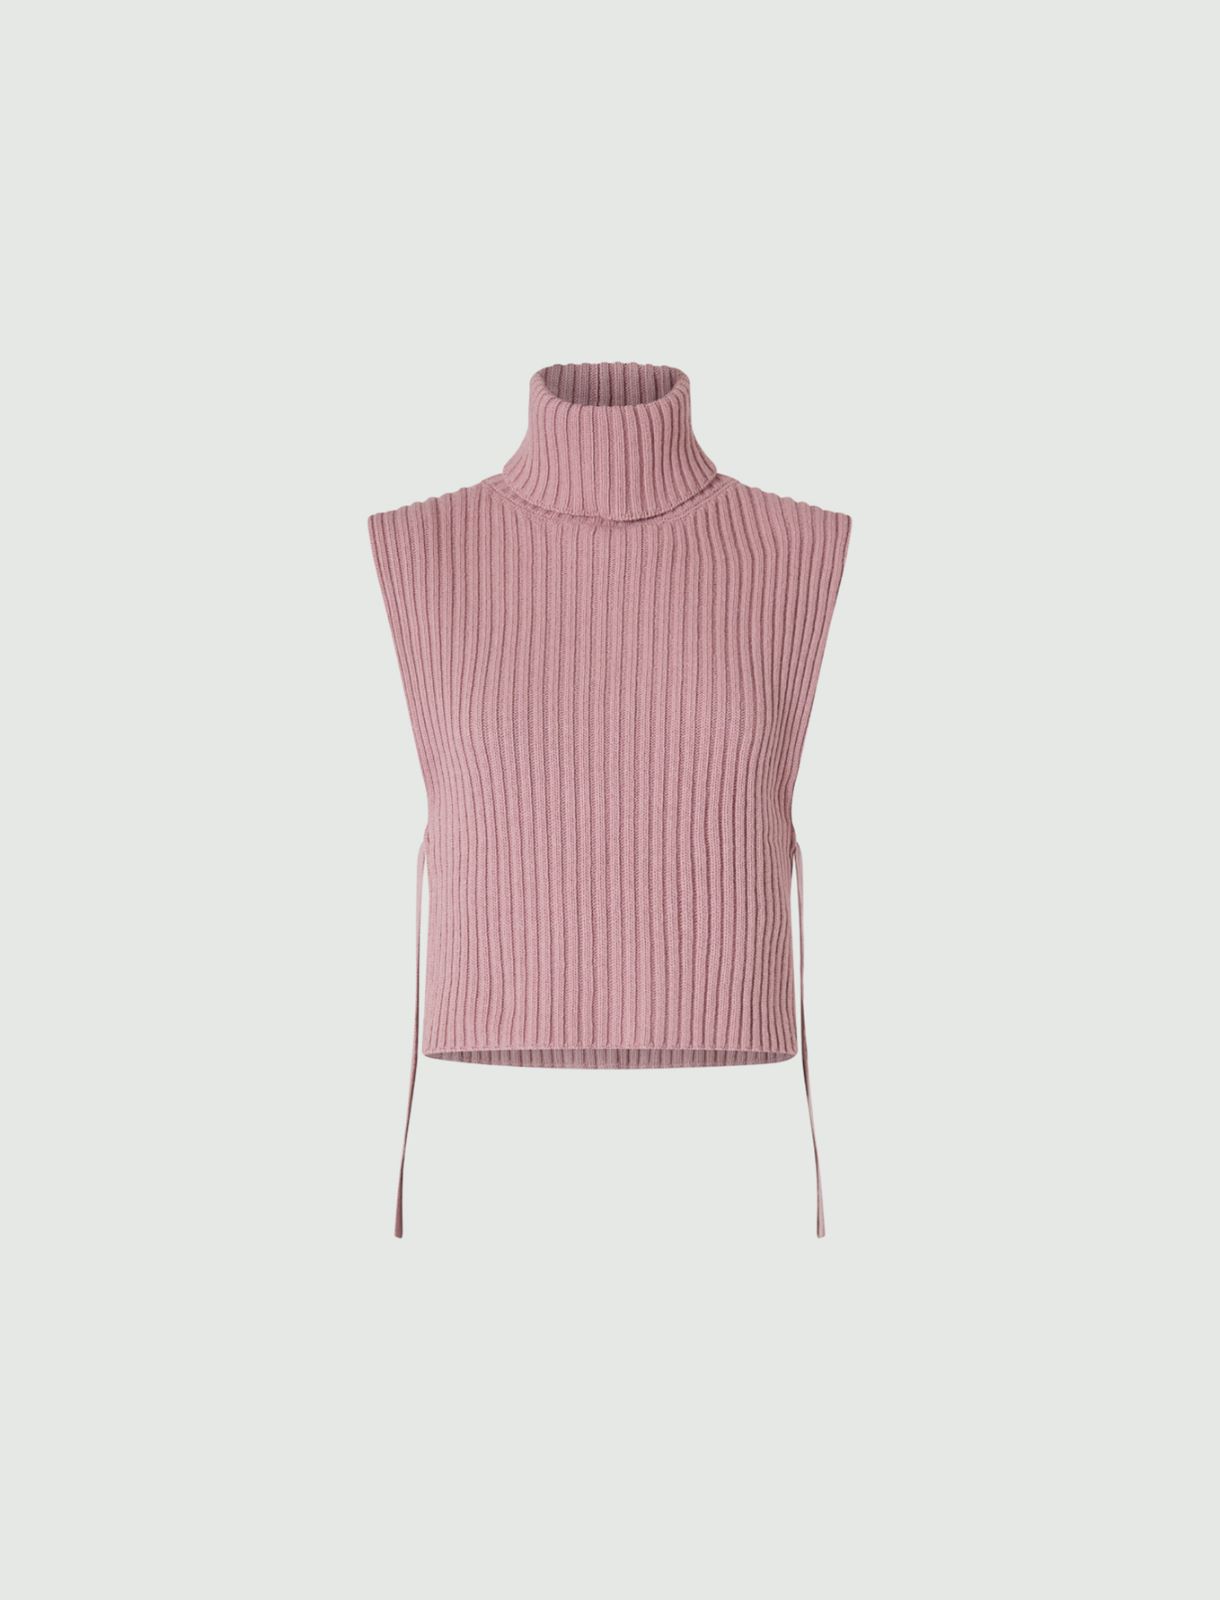 Wool and cashmere bib  - Pink - Marina Rinaldi